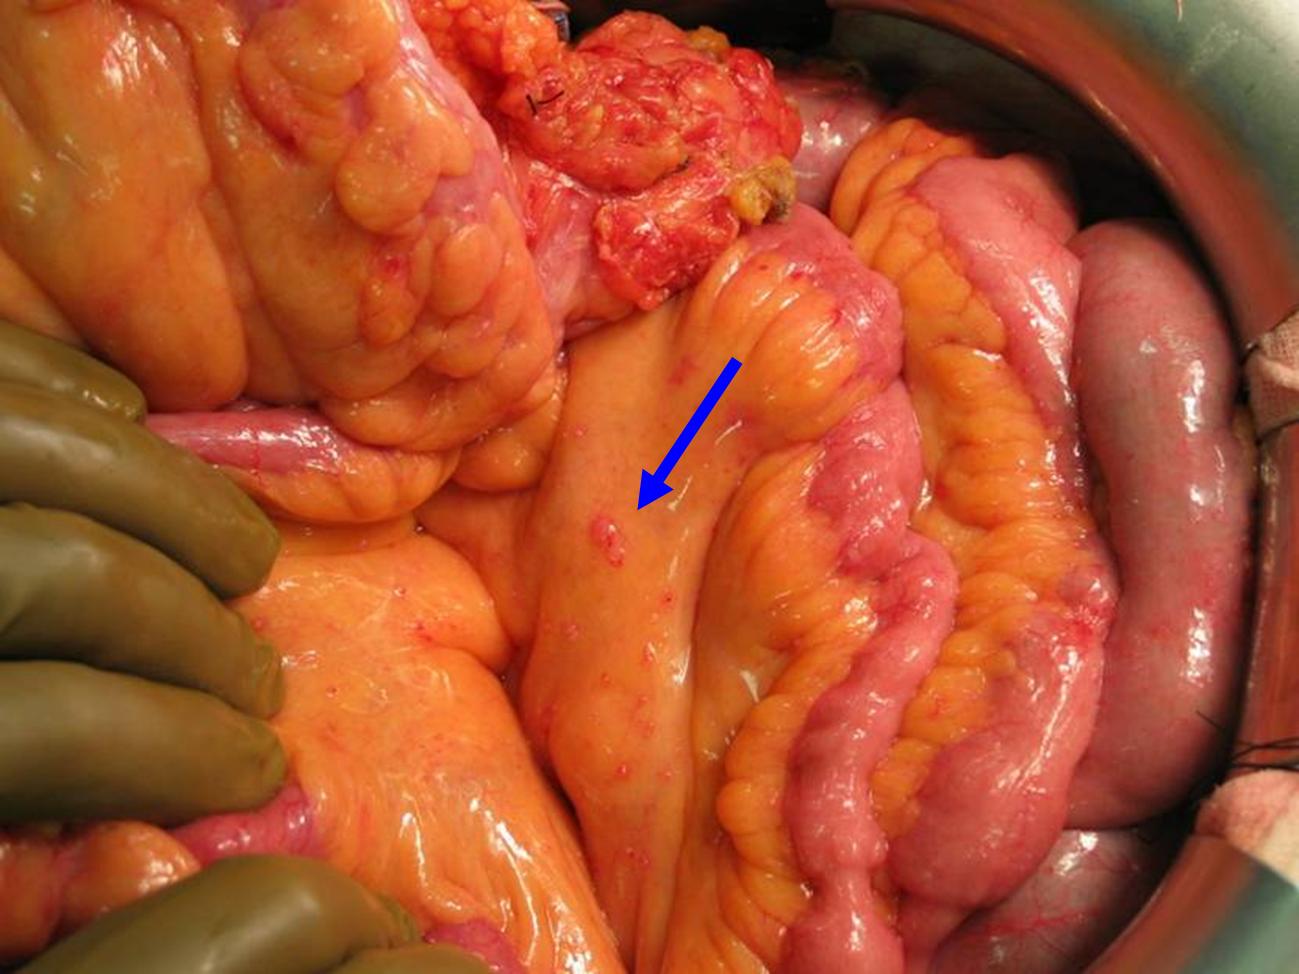 Peritoneal cancer from colon, Šaltinių per metus